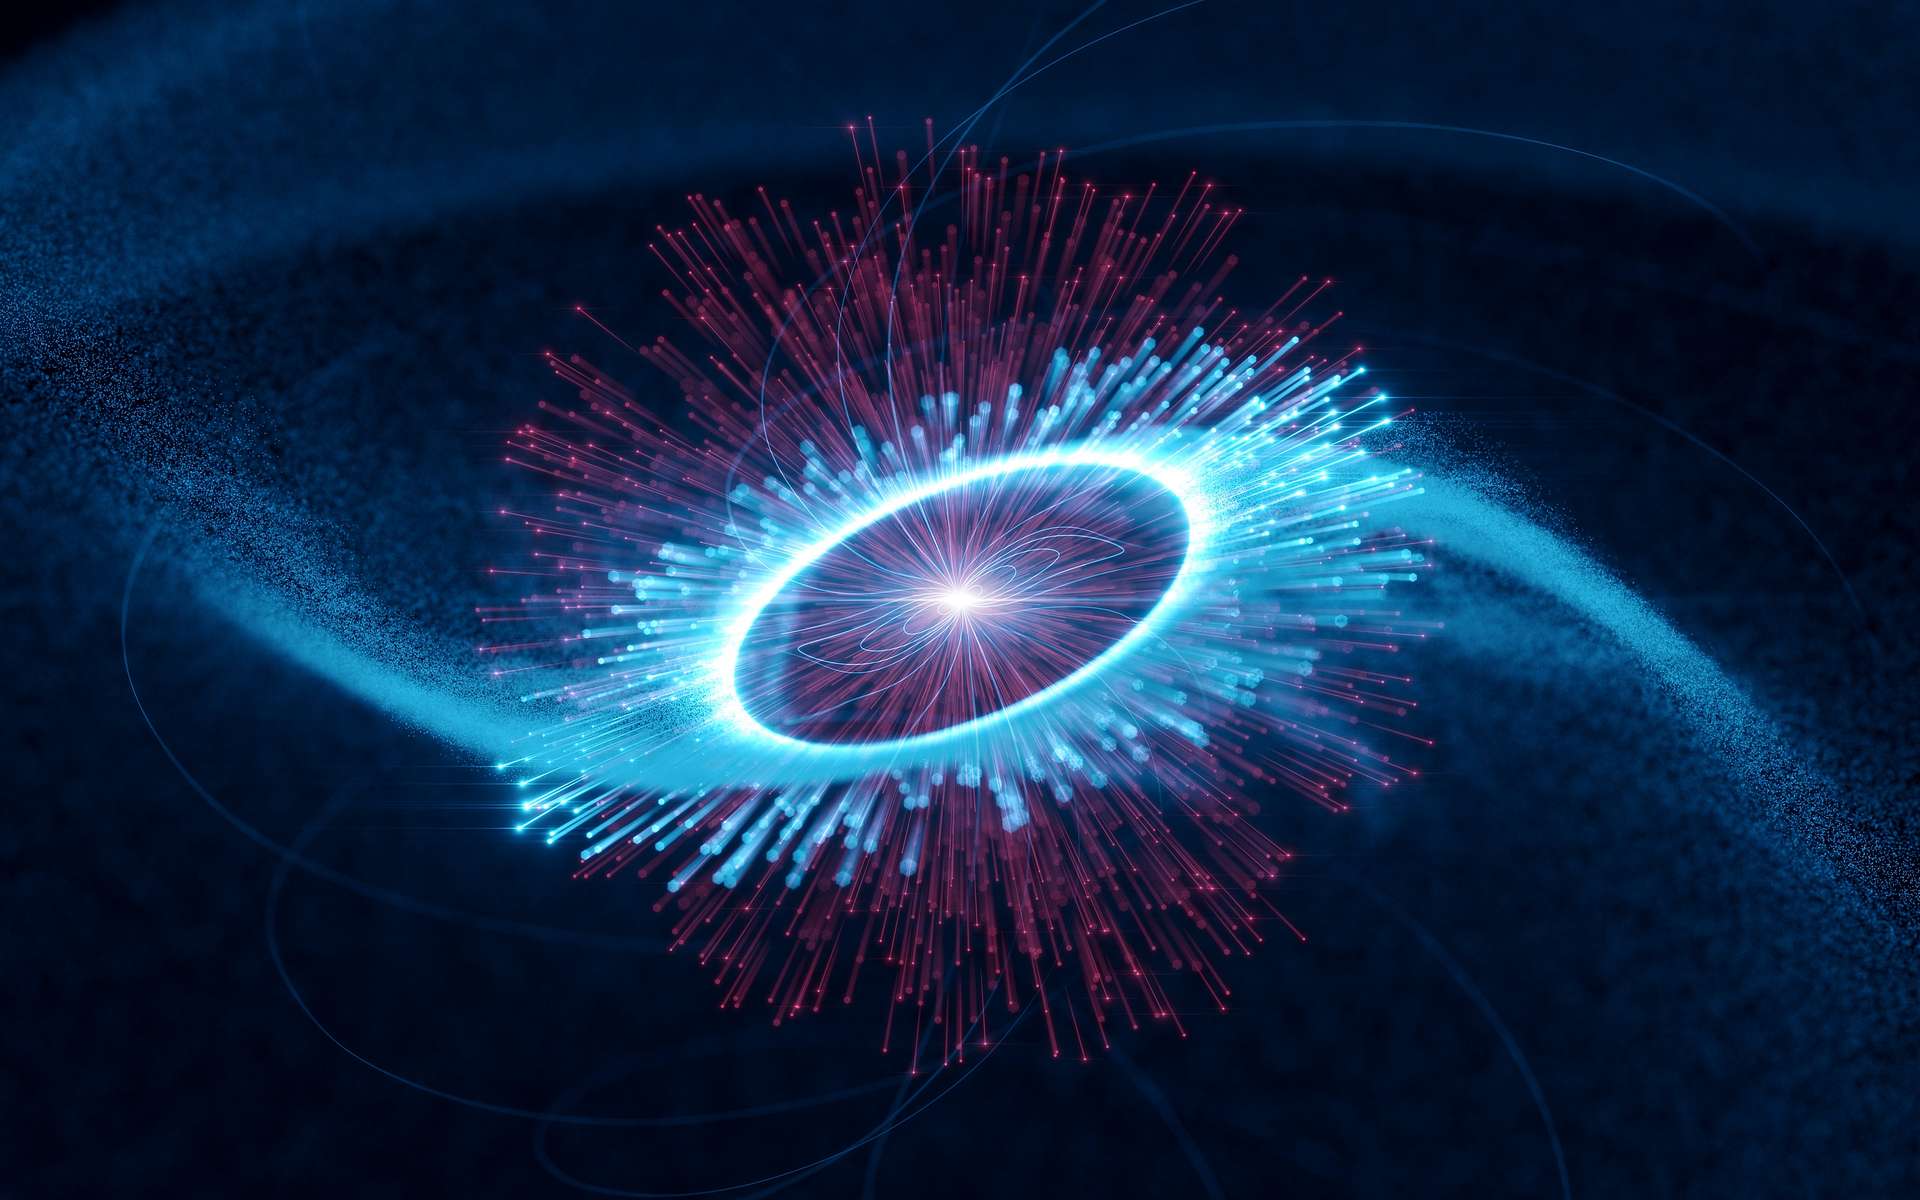 Un pulsar proche du Soleil émet des rayons gamma à des énergies incompréhensibles